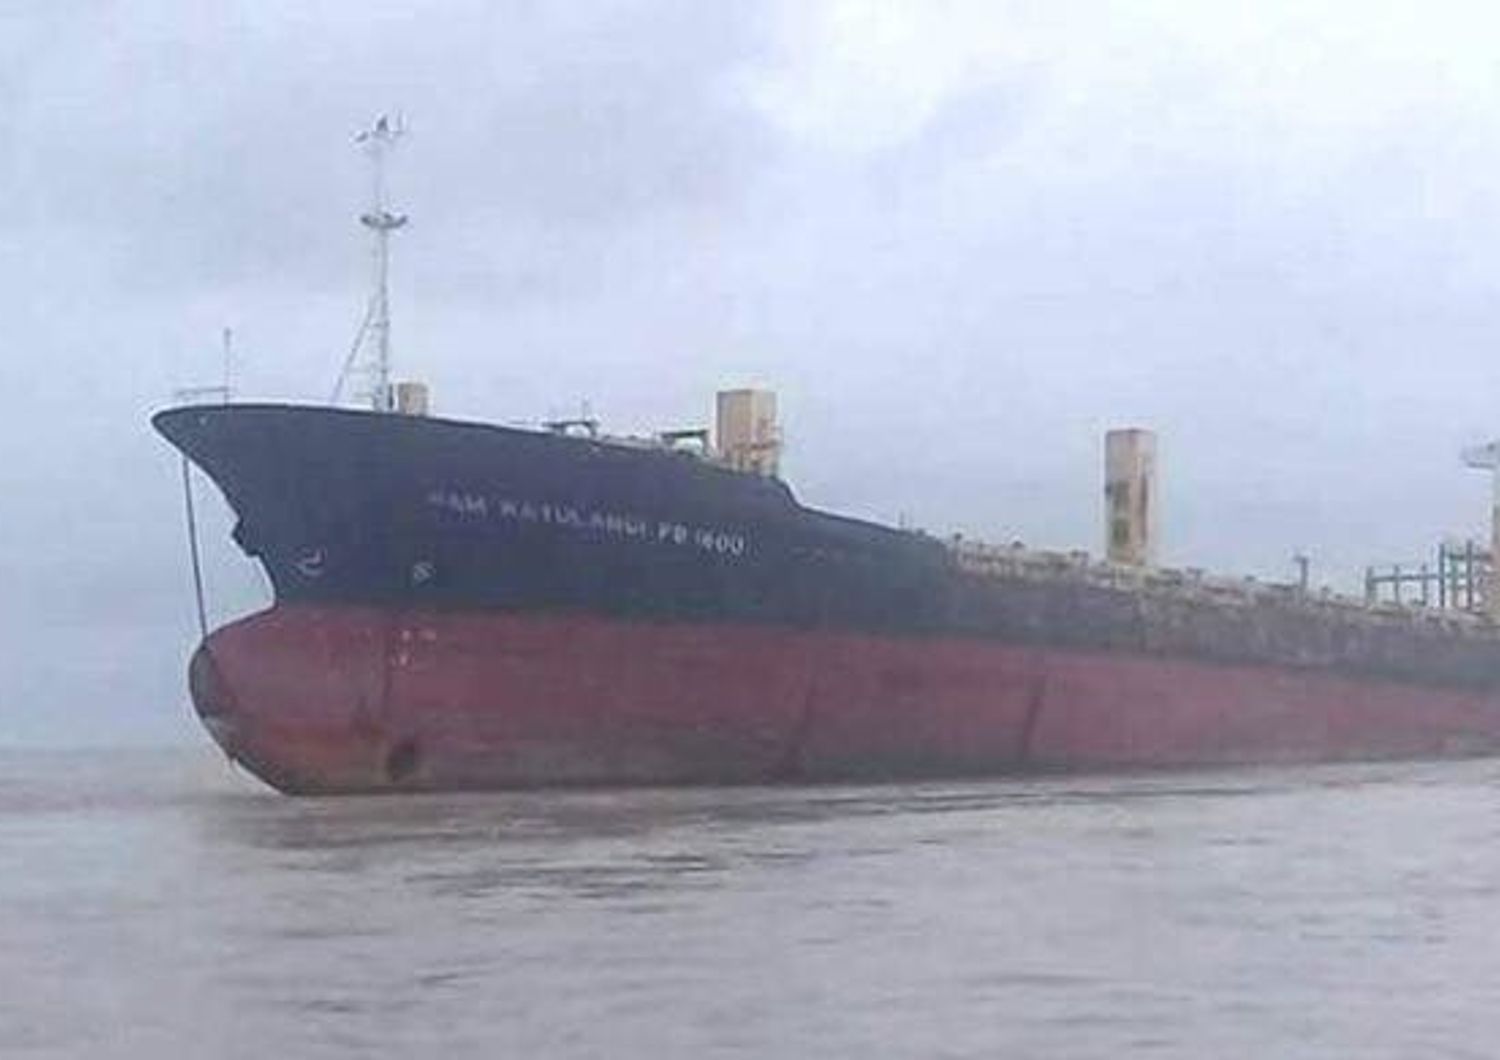 Il caso della nave fantasma riapparsa (vuota) dopo 9 anni a largo del Myanmar